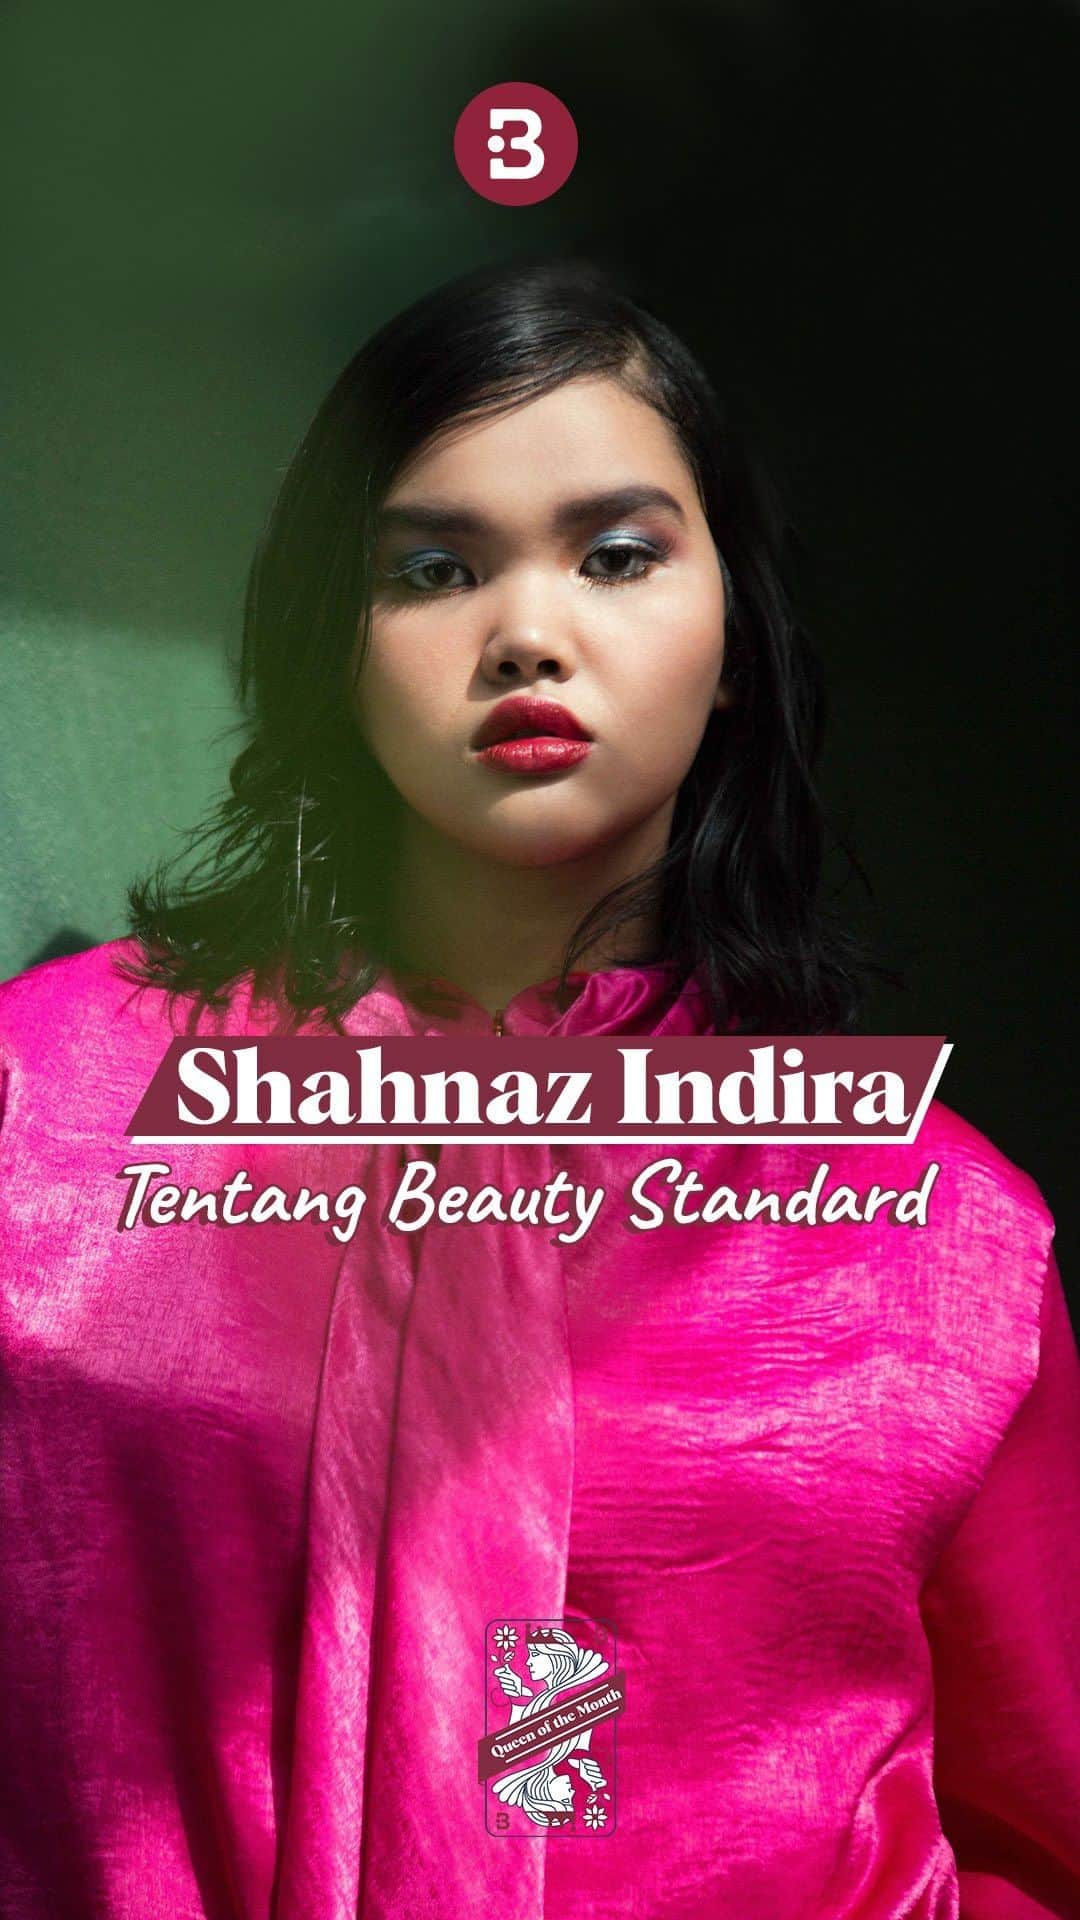 Beauty | Health | Fashionのインスタグラム